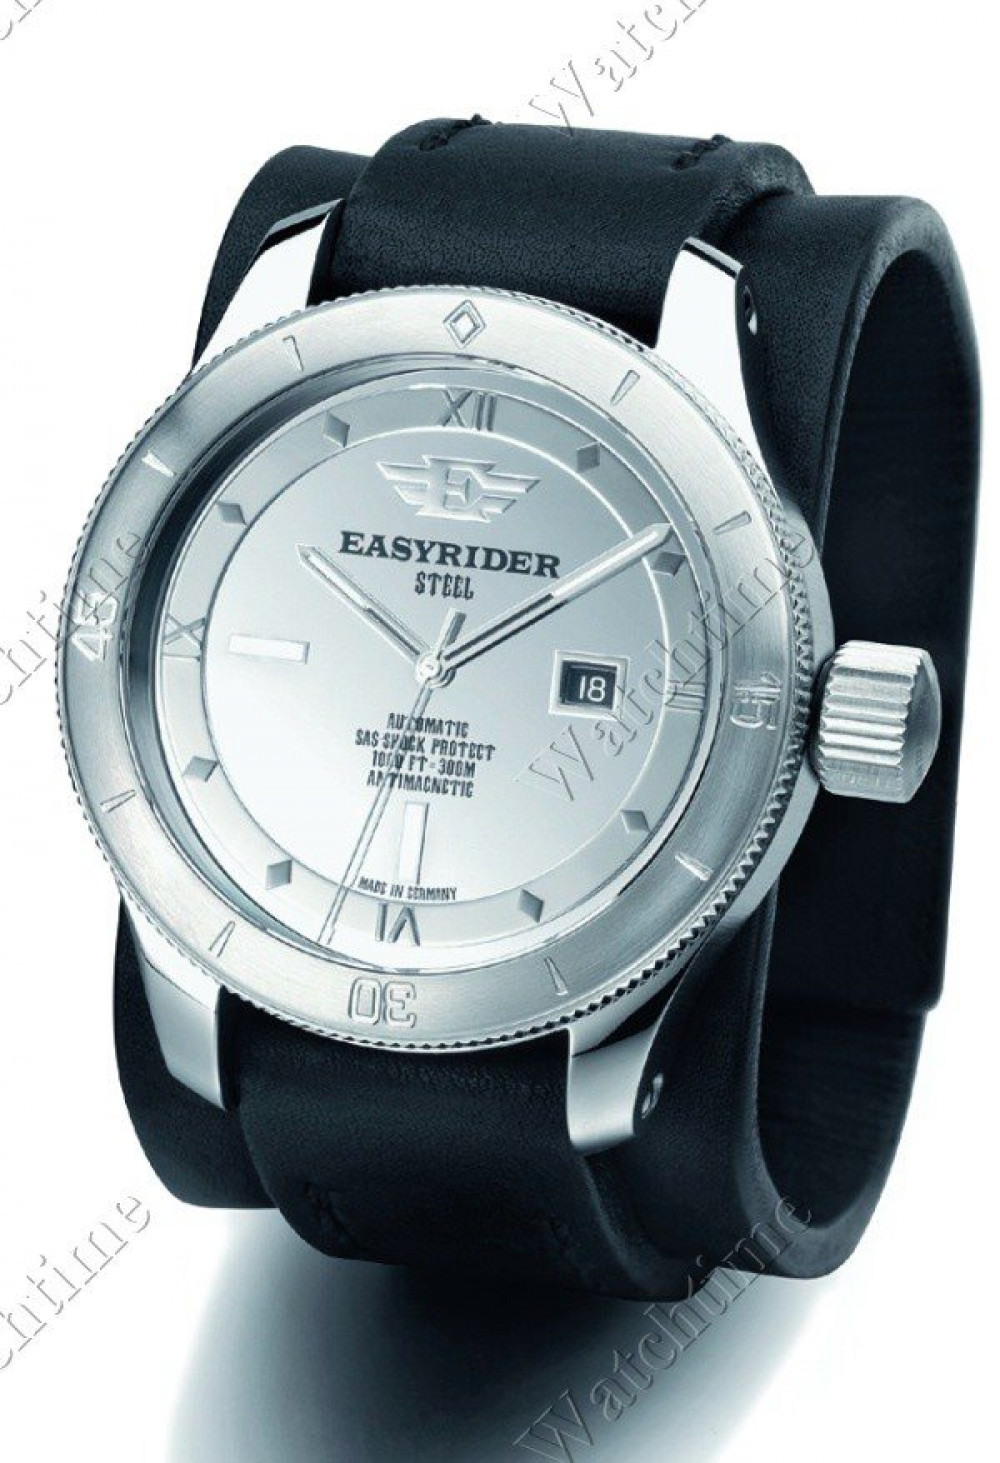 Zegarek firmy Easyrider, model 1969 Steel